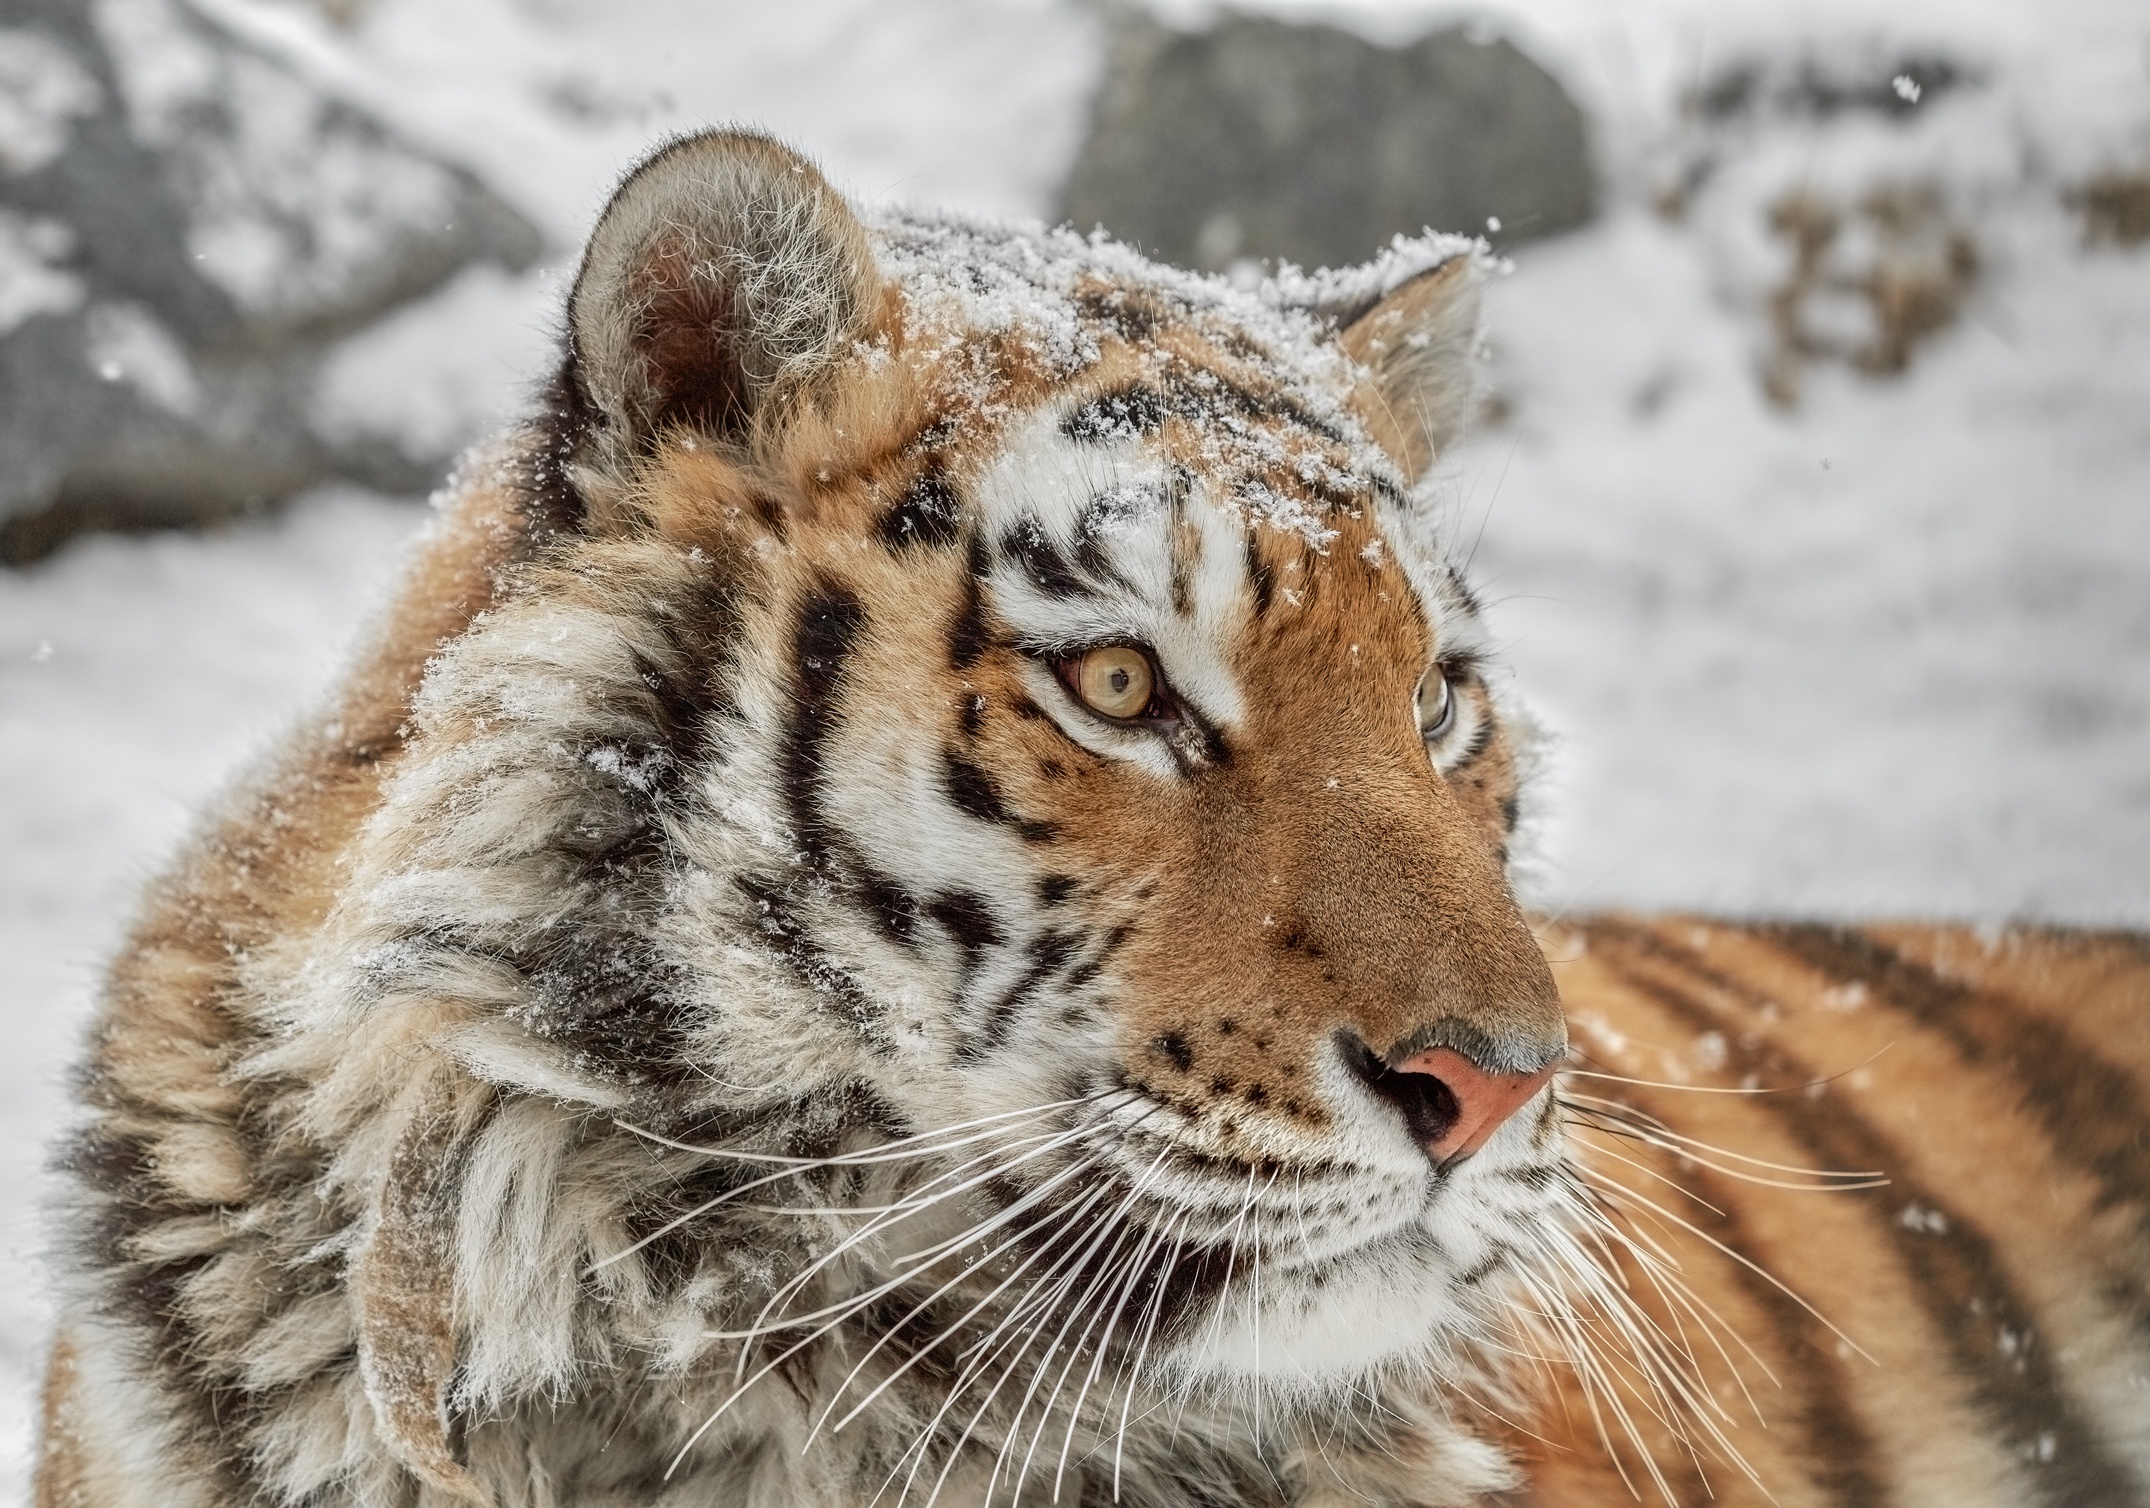 Скачать обои бесплатно Животные, Зима, Тигр, Снегопад, Кошки картинка на рабочий стол ПК